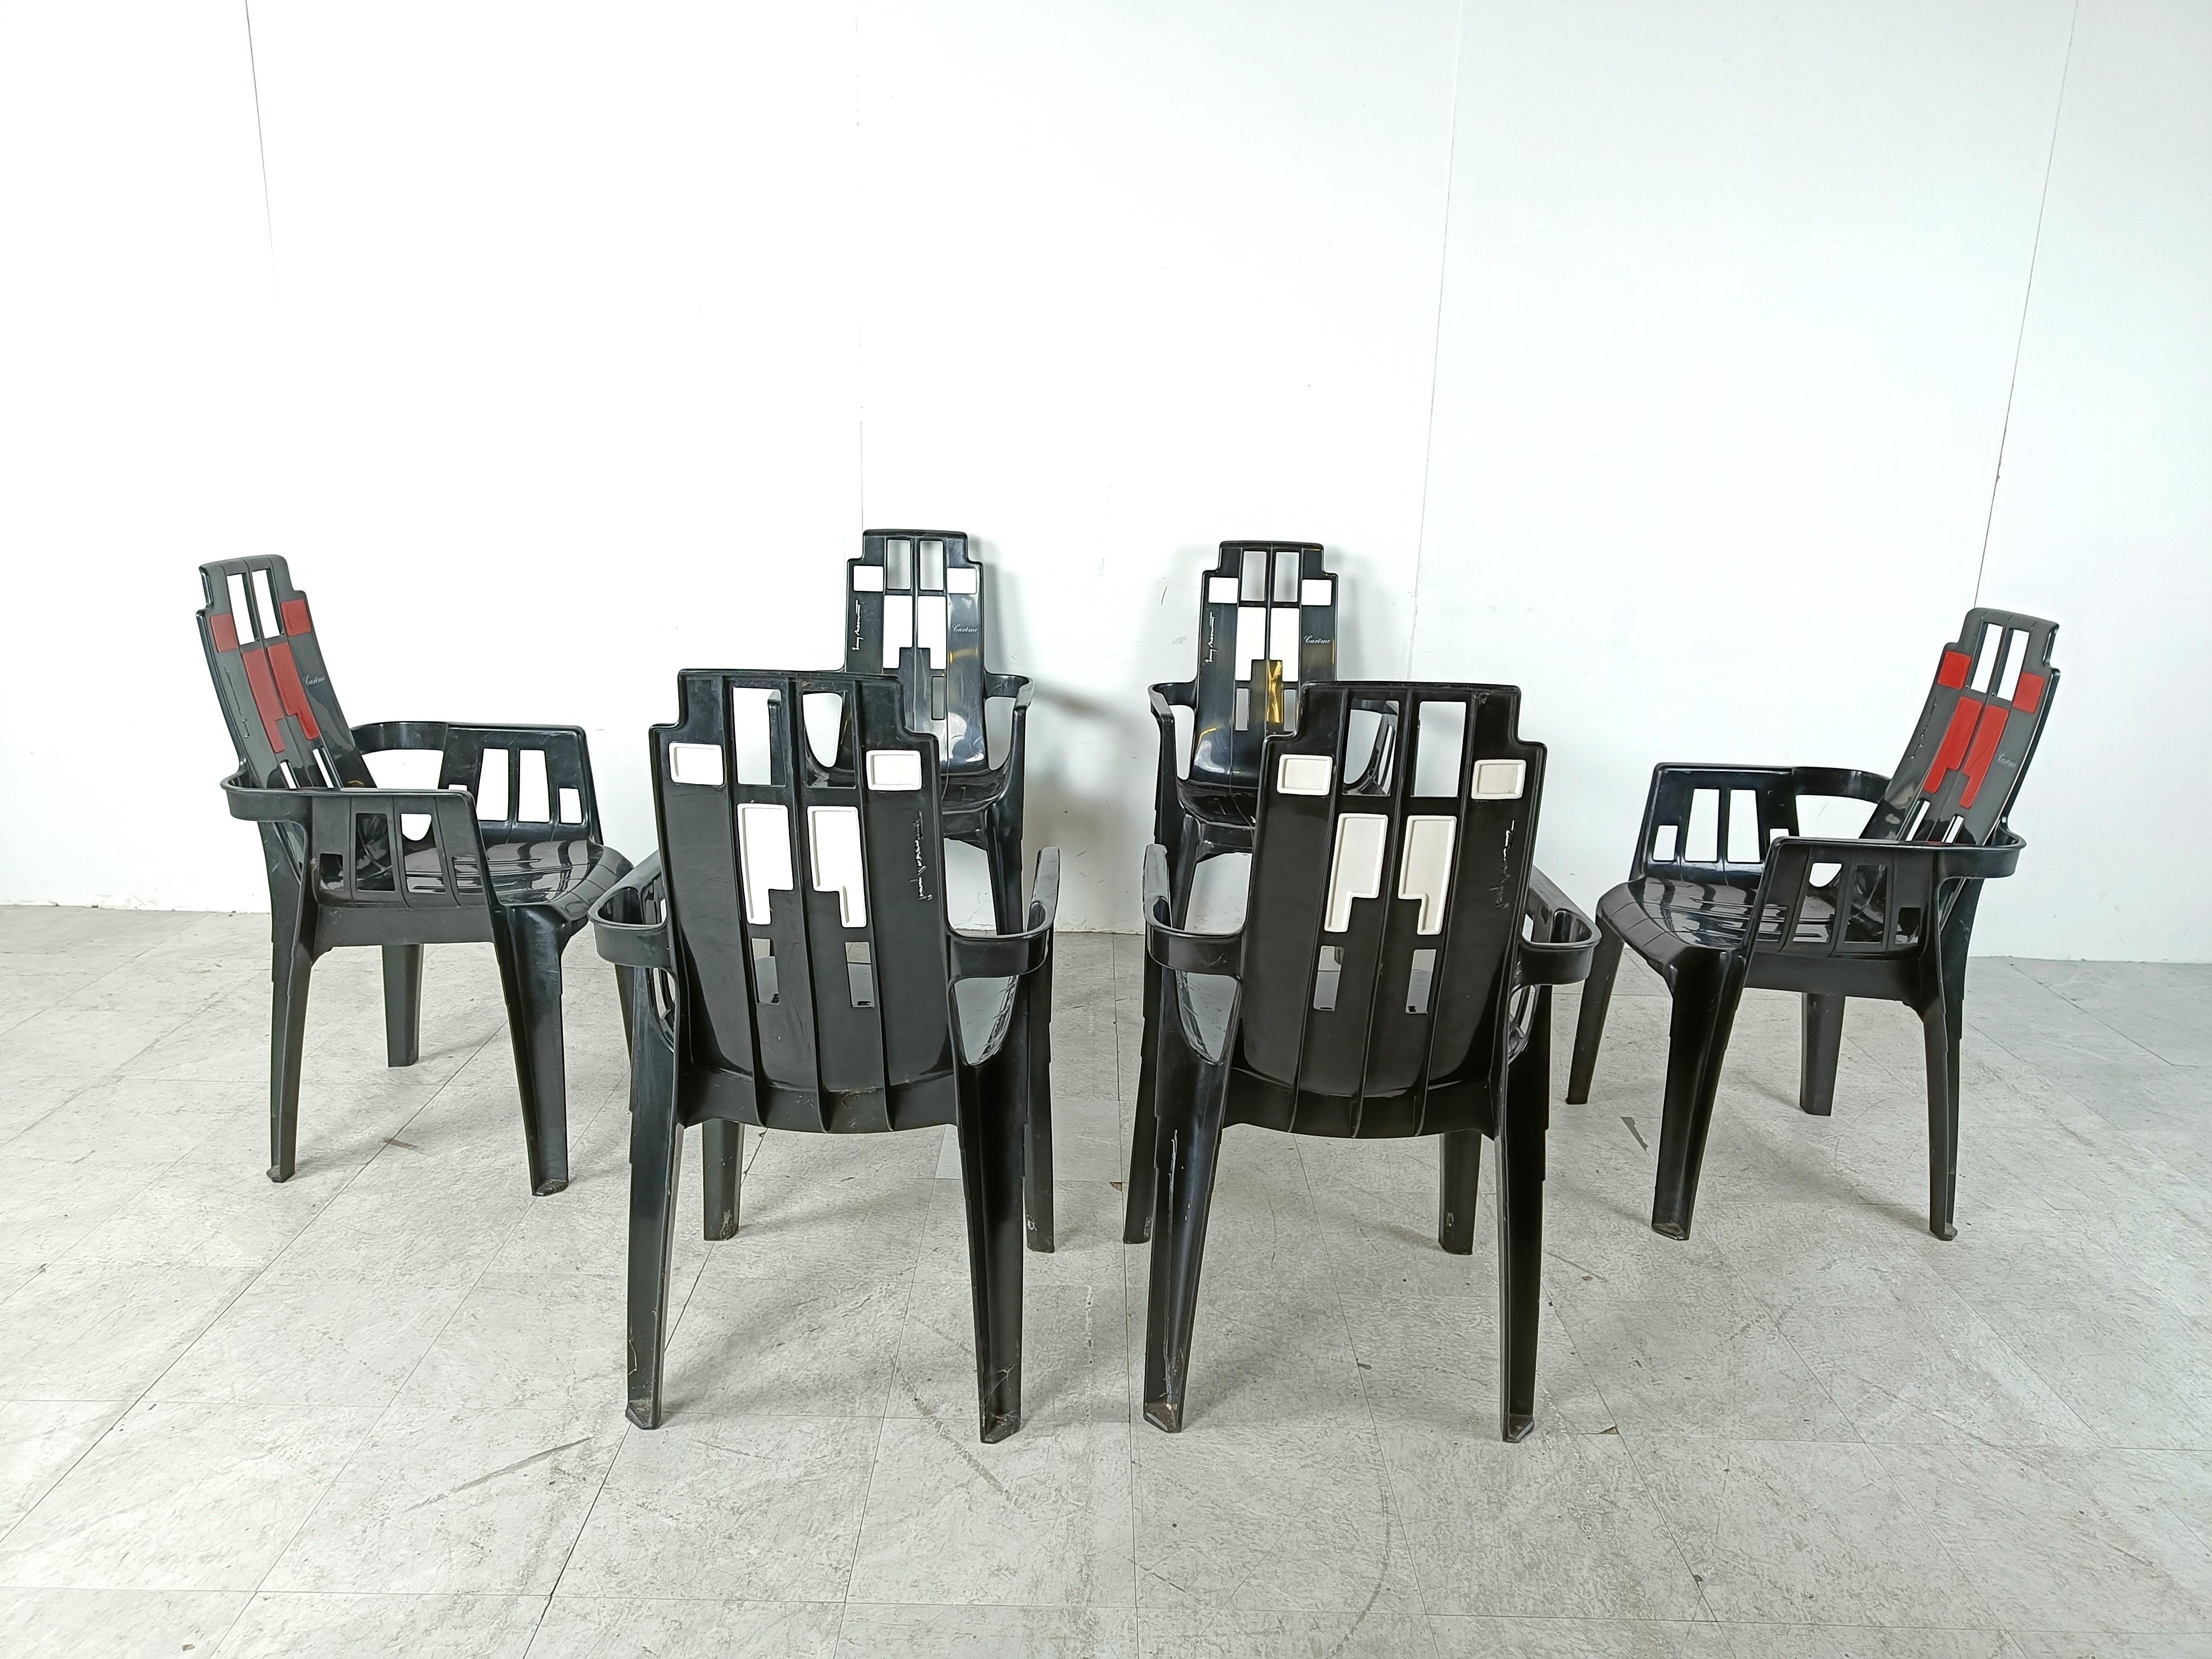 Ensemble de 6 chaises de salle à manger empilables Boston de Pierre Paulin inspirées par Piet Mondriaan et Charles Rennie Mackintosh.

Ces chaises de salle à manger peuvent être utilisées à l'intérieur et à l'extérieur et ont un design